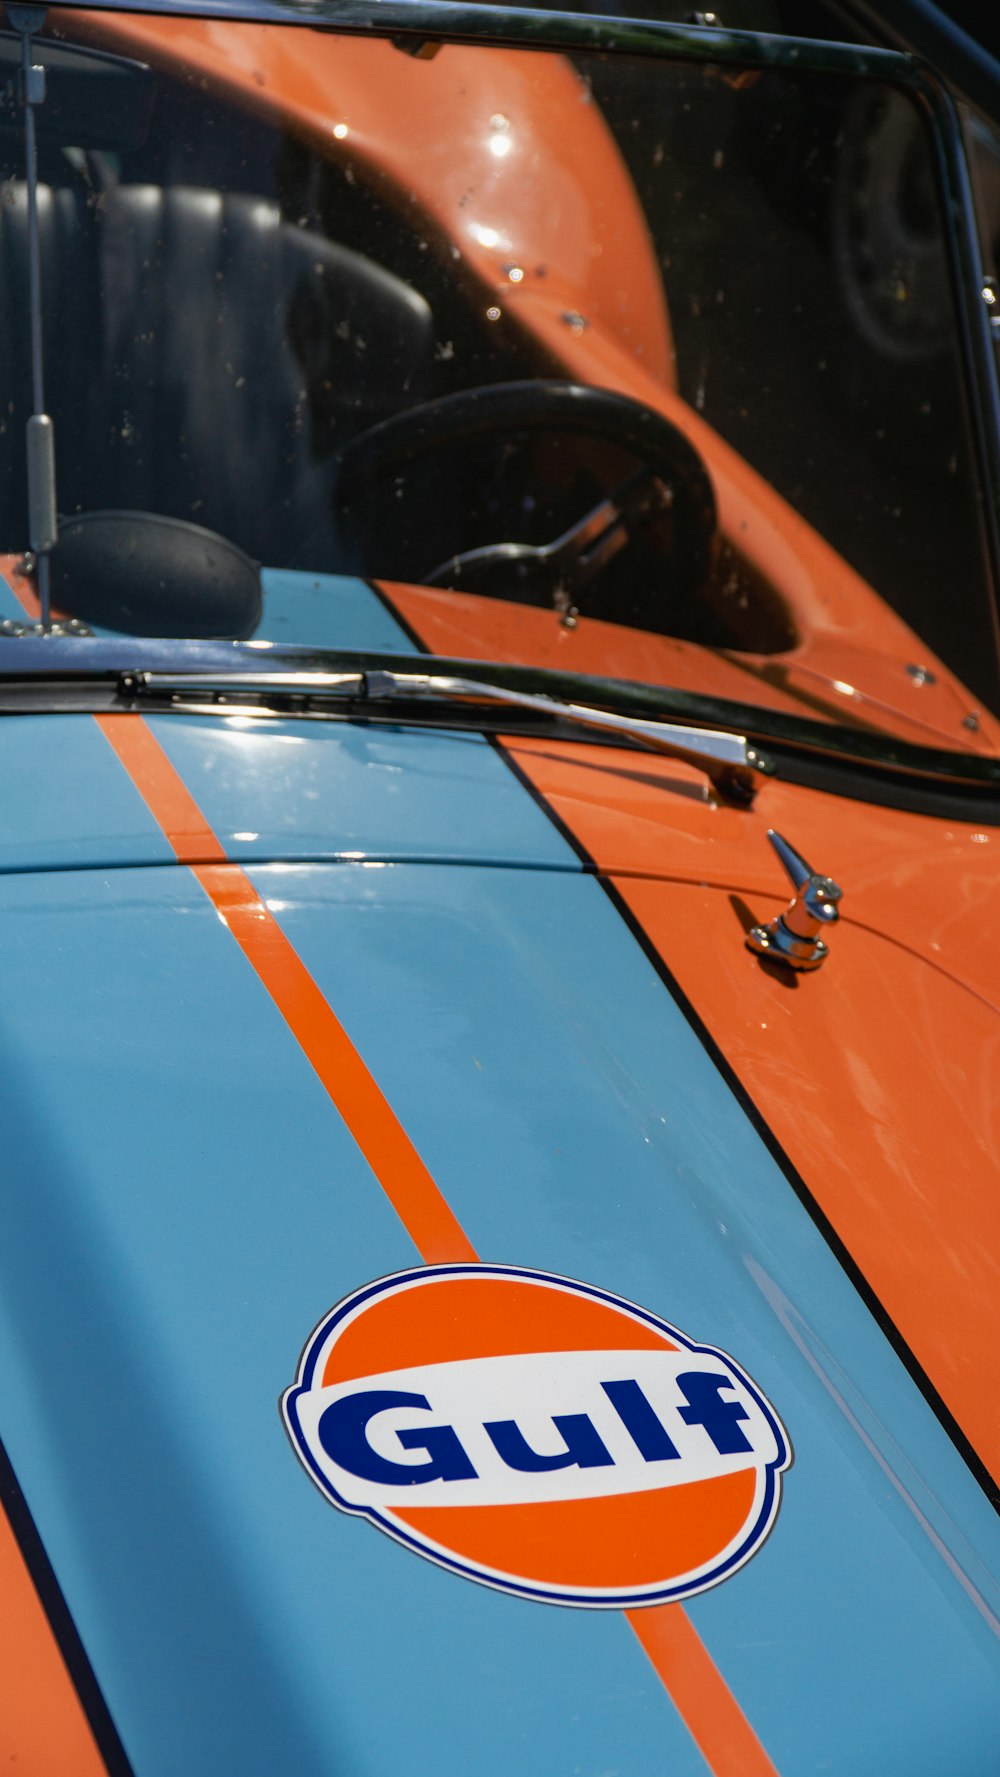 Une voiture orange et bleue avec le mot Gulf dessus